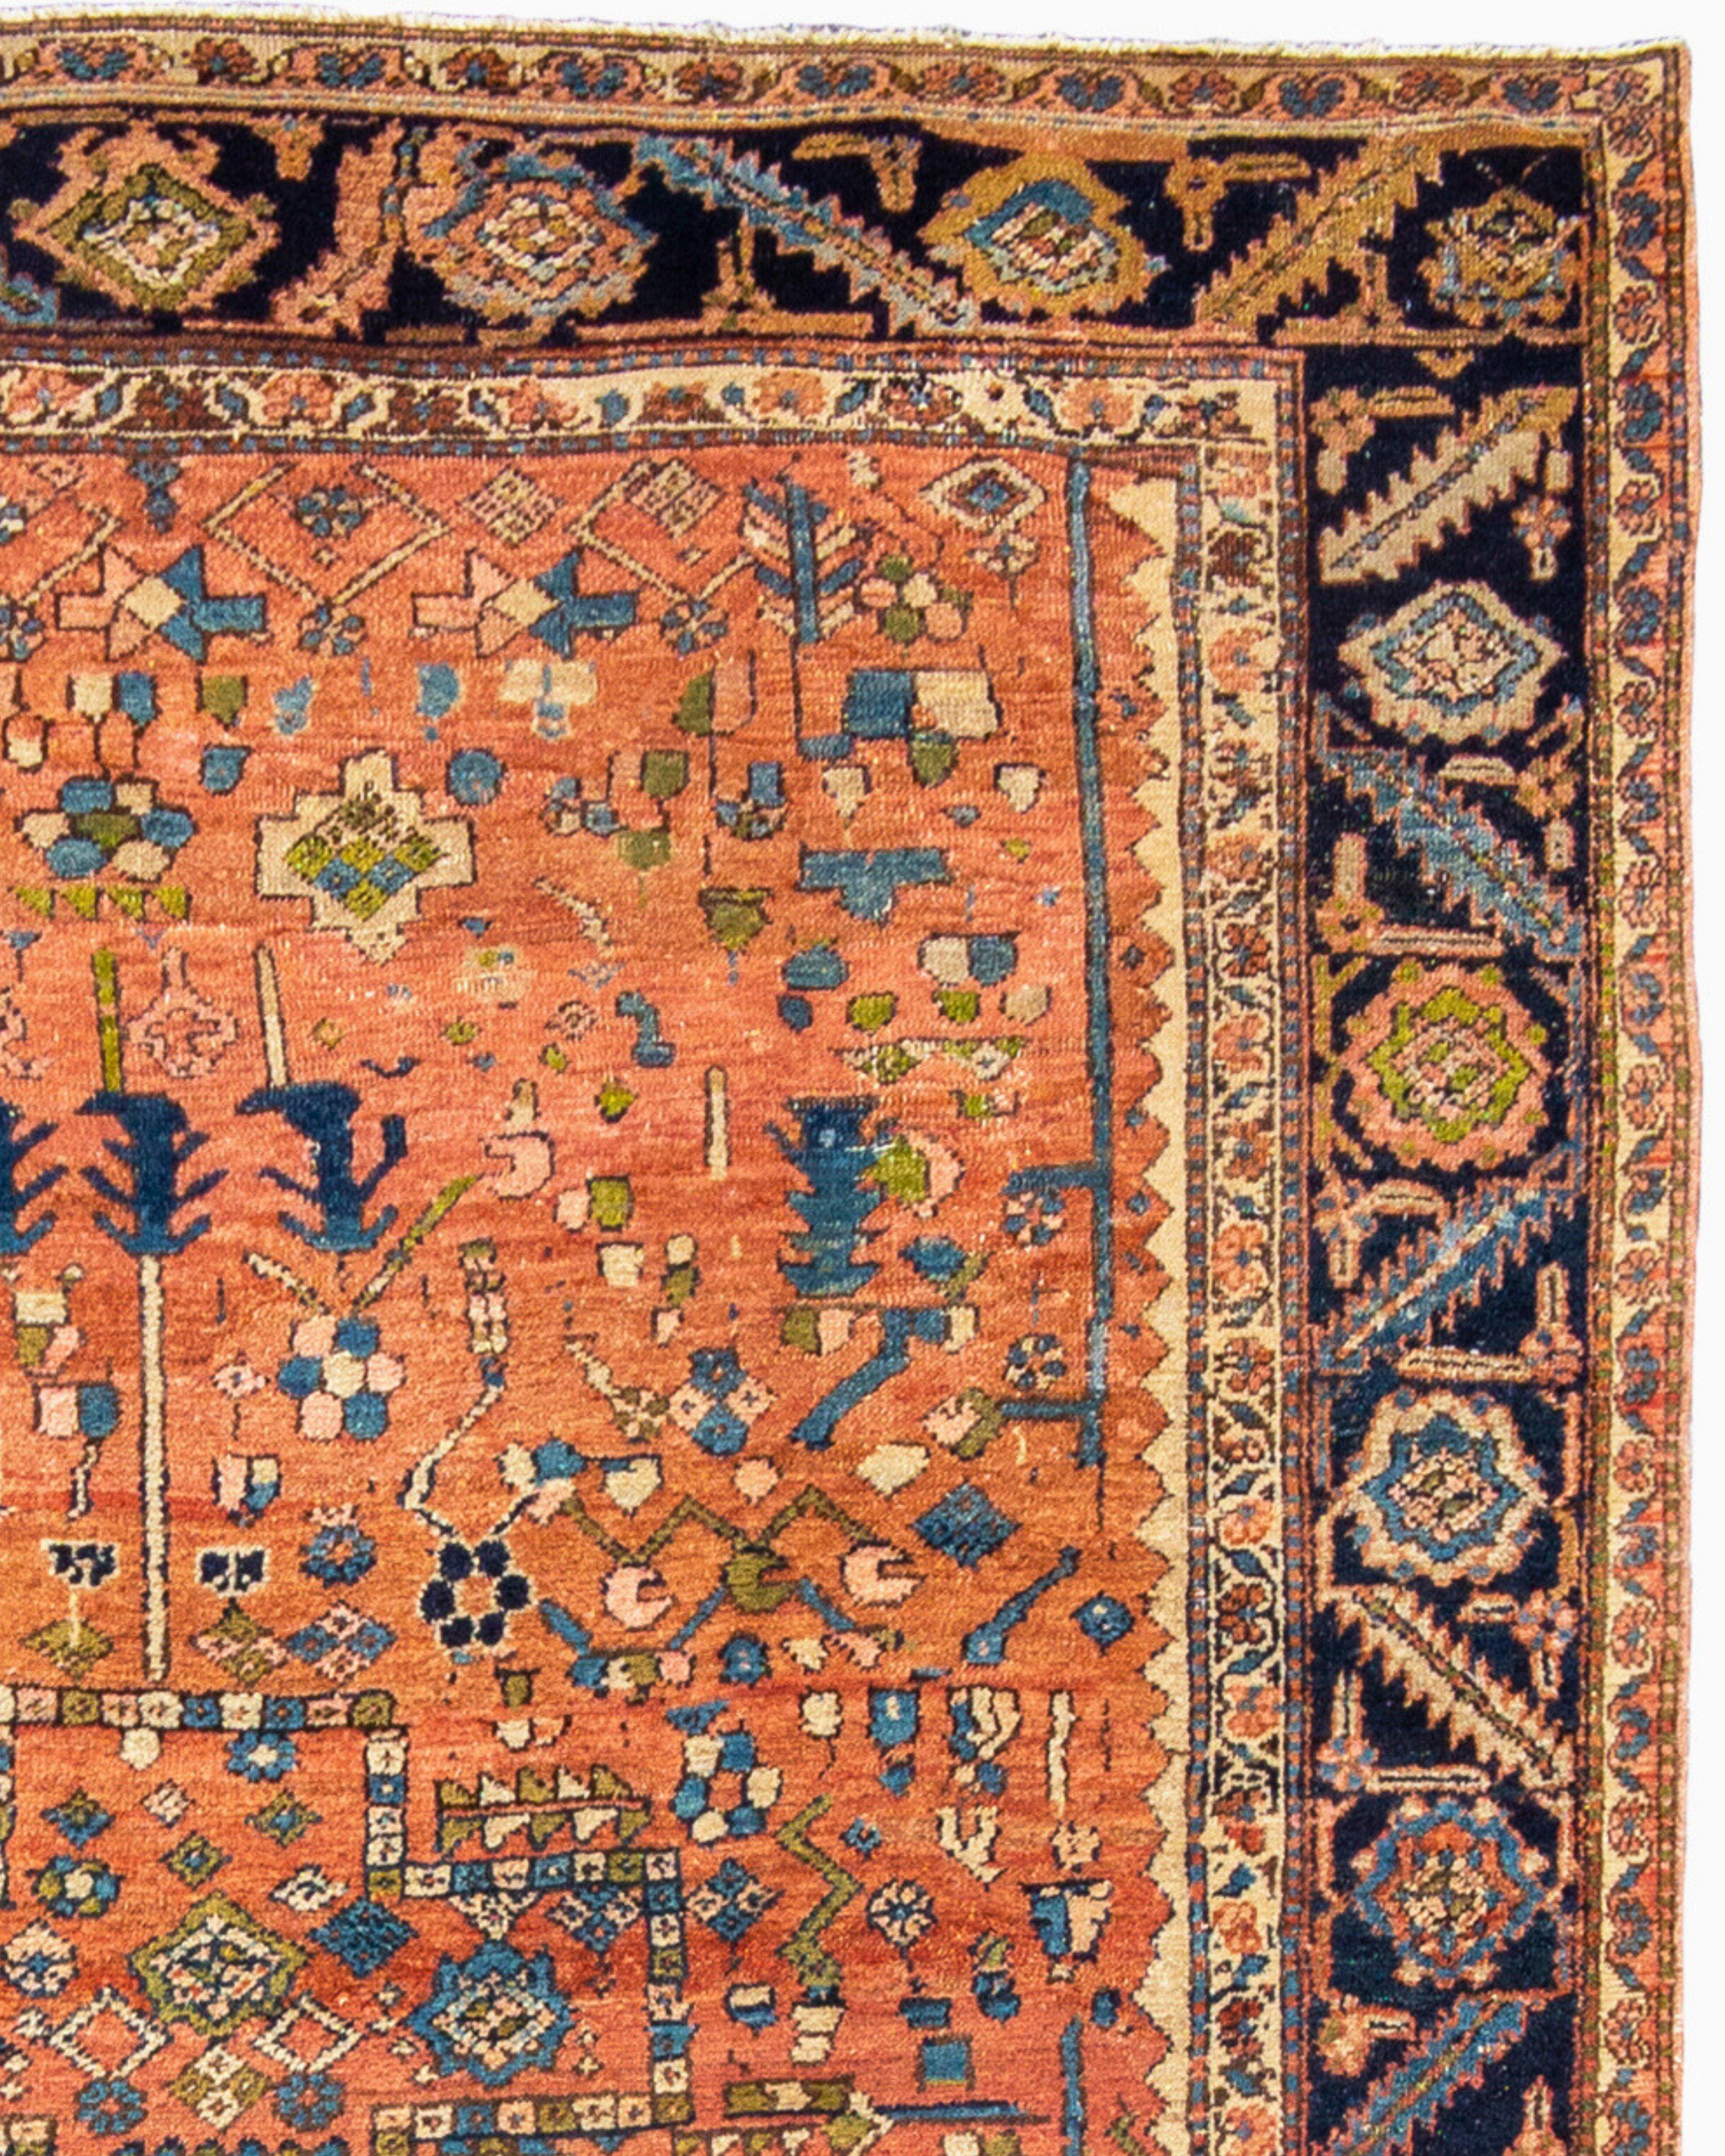 Antiker persischer Bakhshaish-Teppich, um 1900

Zusätzliche Informationen:
Abmessungen: 8'8